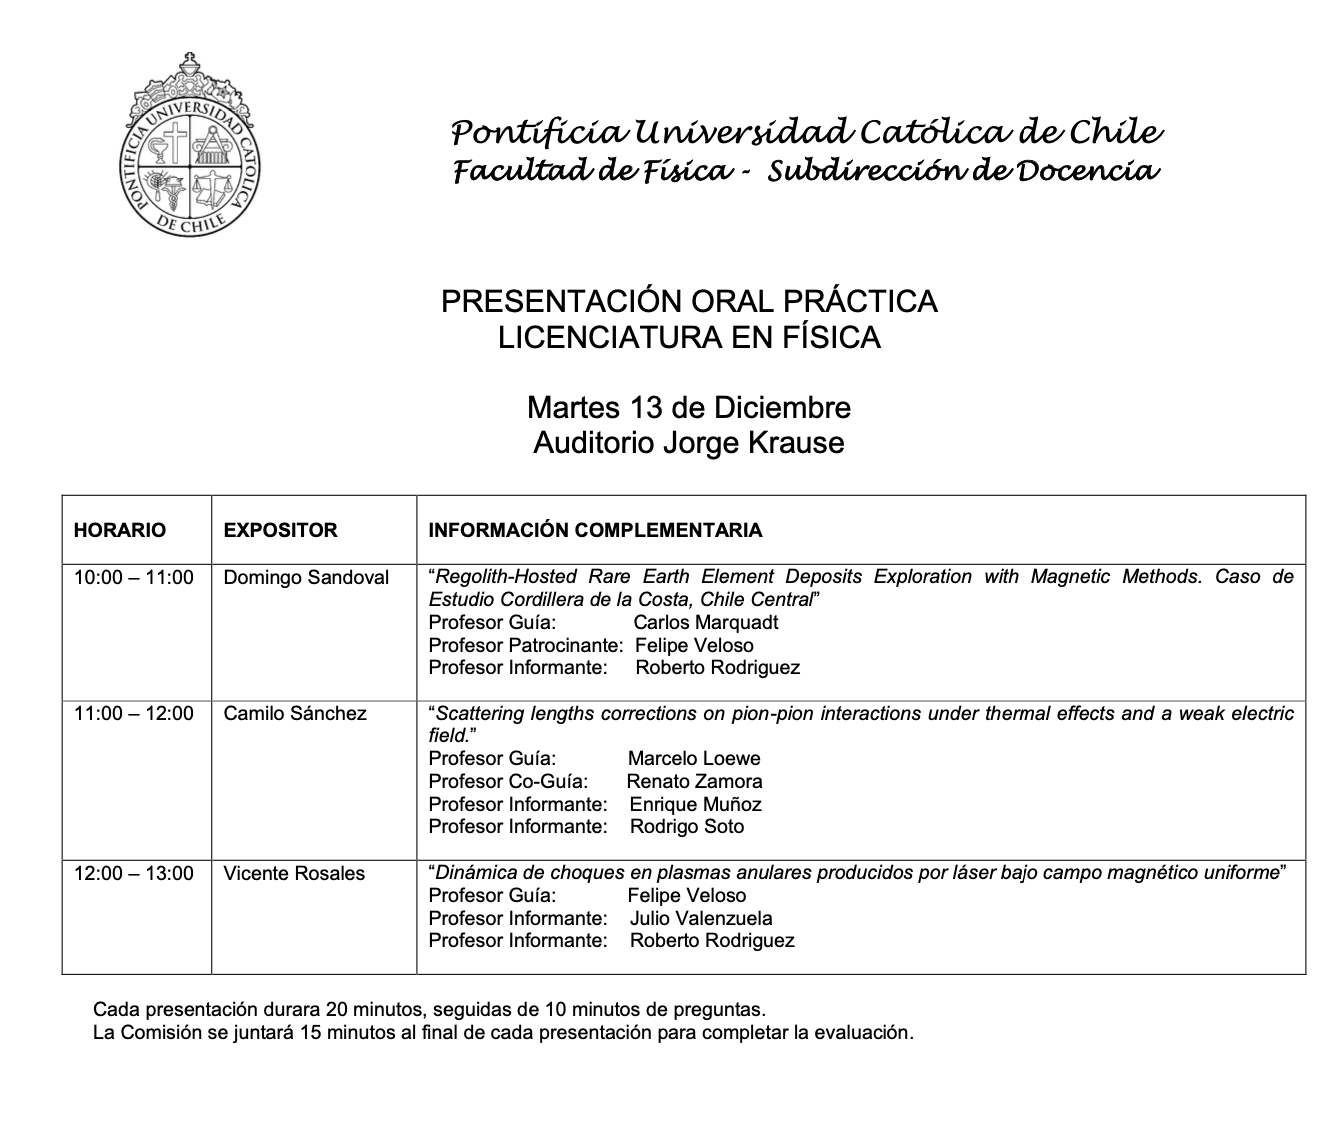  Invitación Presentación Práctica de Licenciatura en Física (13/12/22)